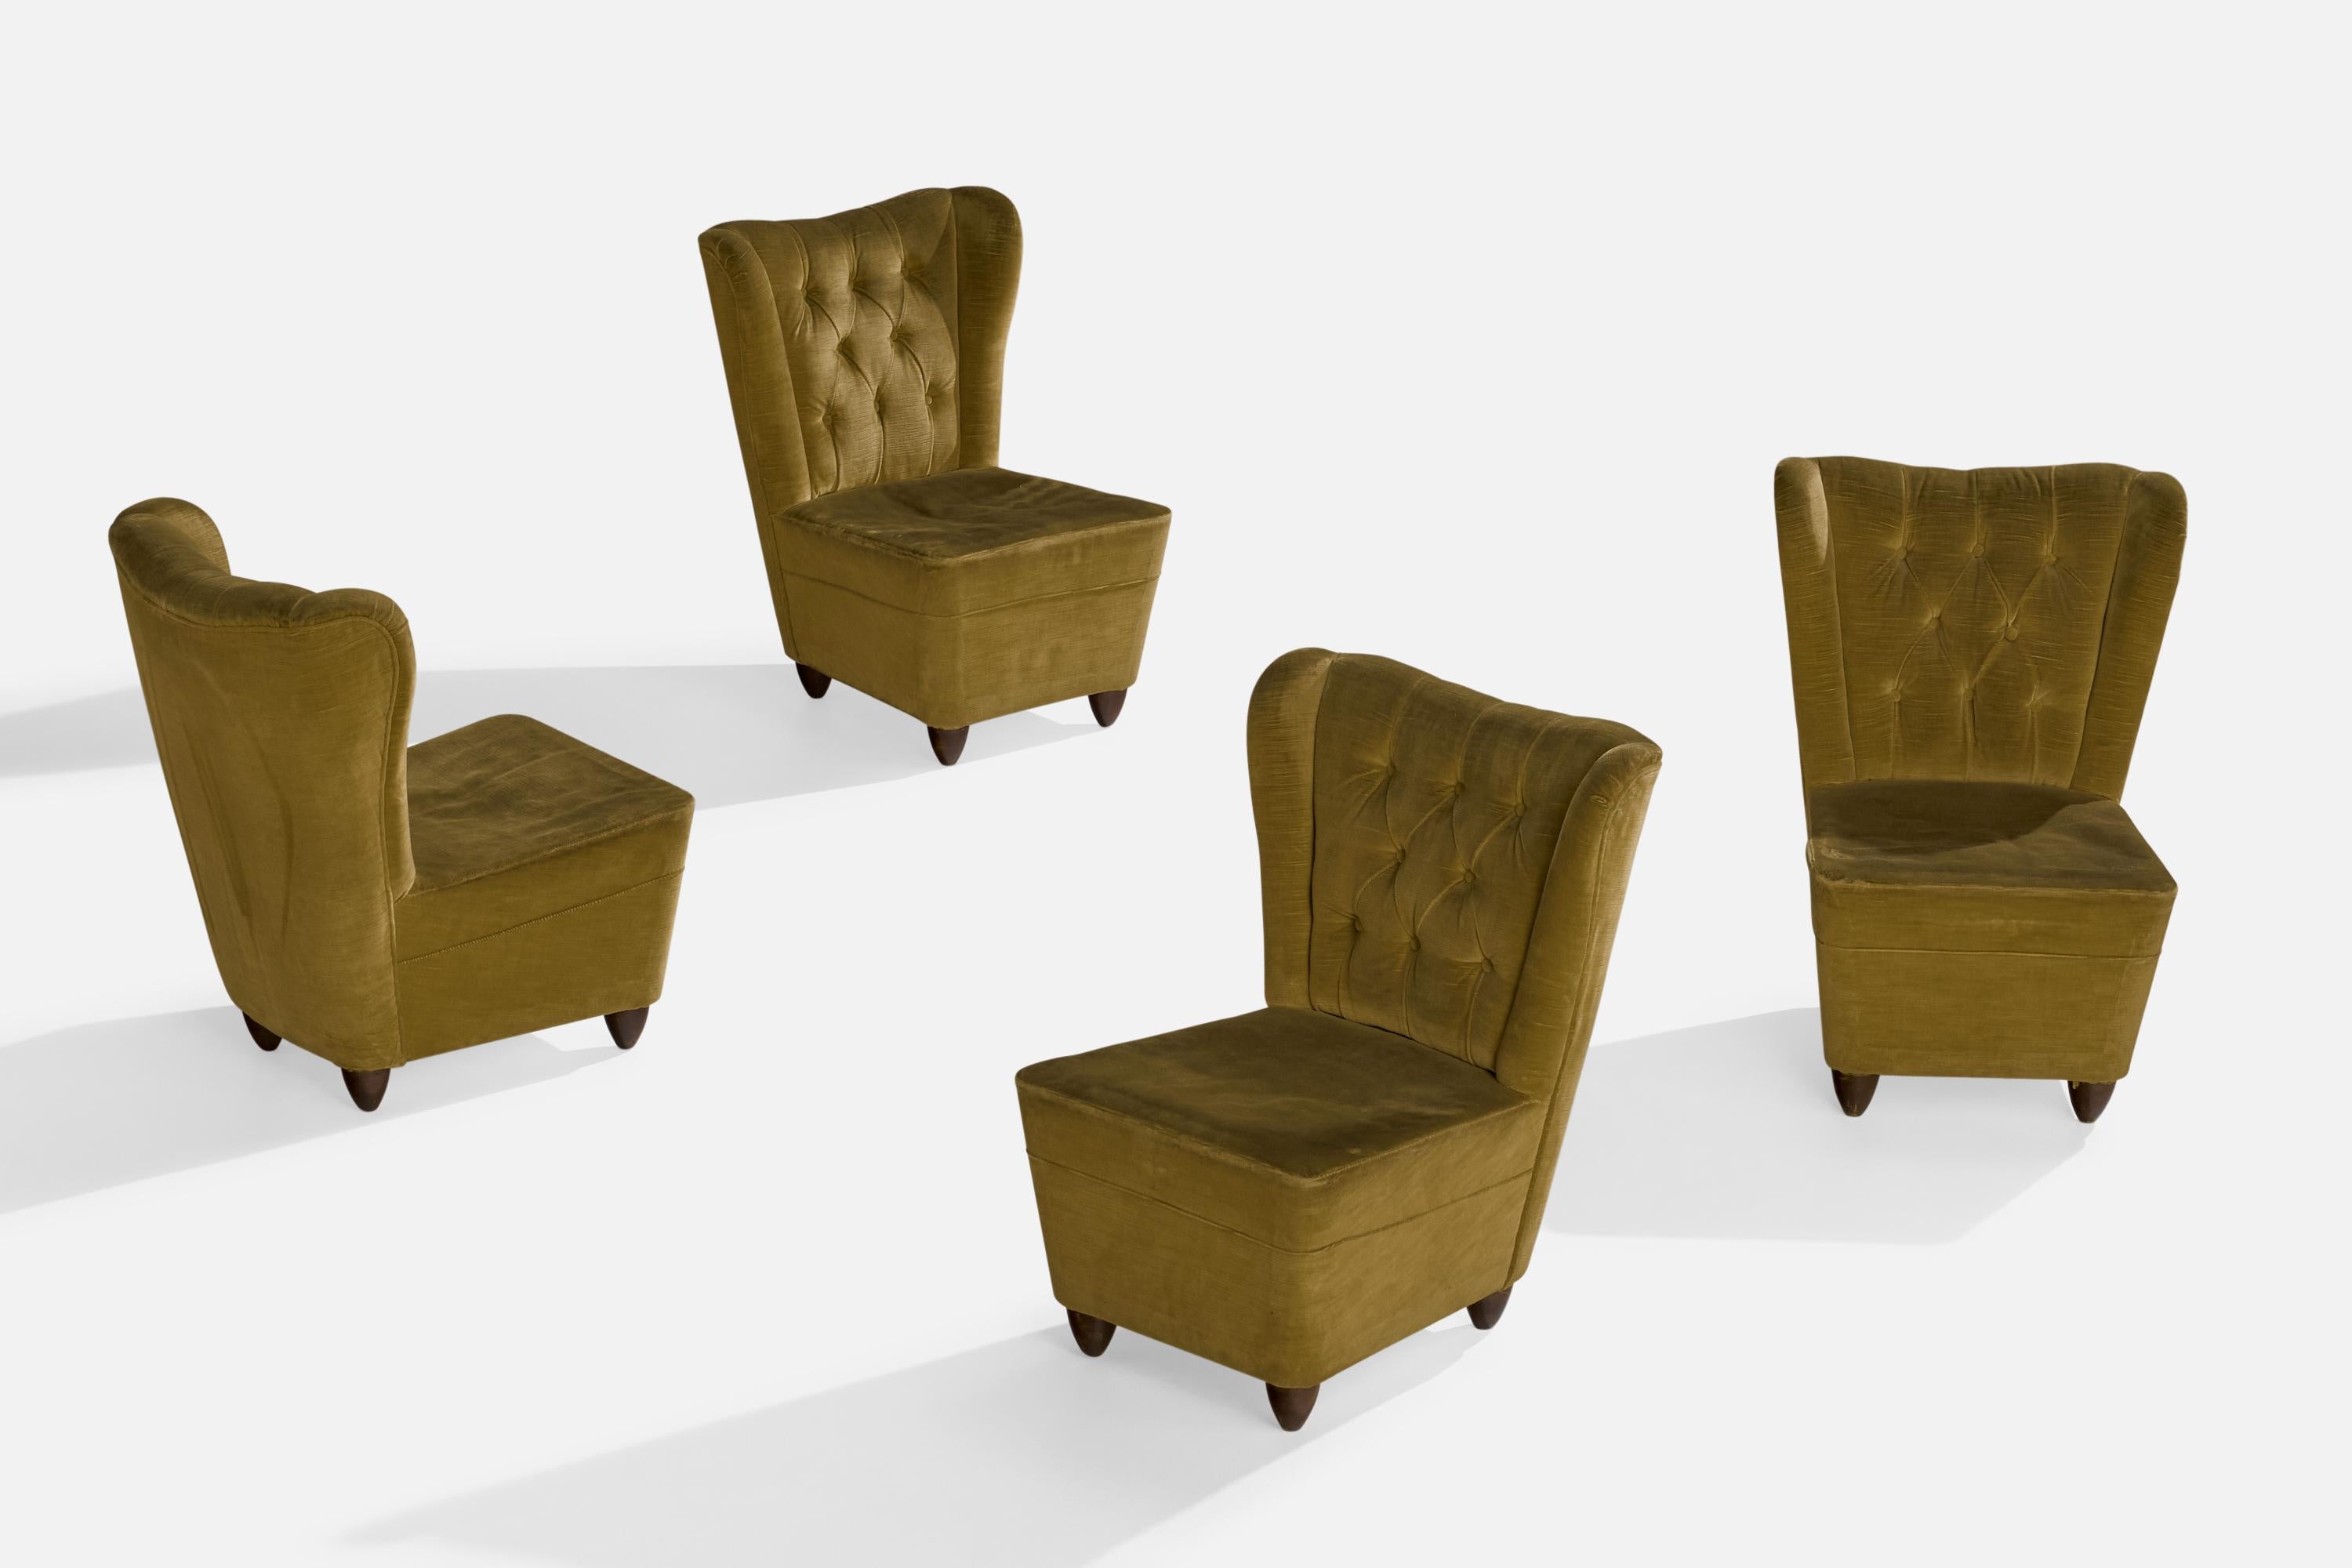 Ein Satz von 4 Sesseln aus grünem Samt und dunkel gebeiztem Holz, entworfen und hergestellt in Italien, 1940er Jahre.

Sitzhöhe 13,5